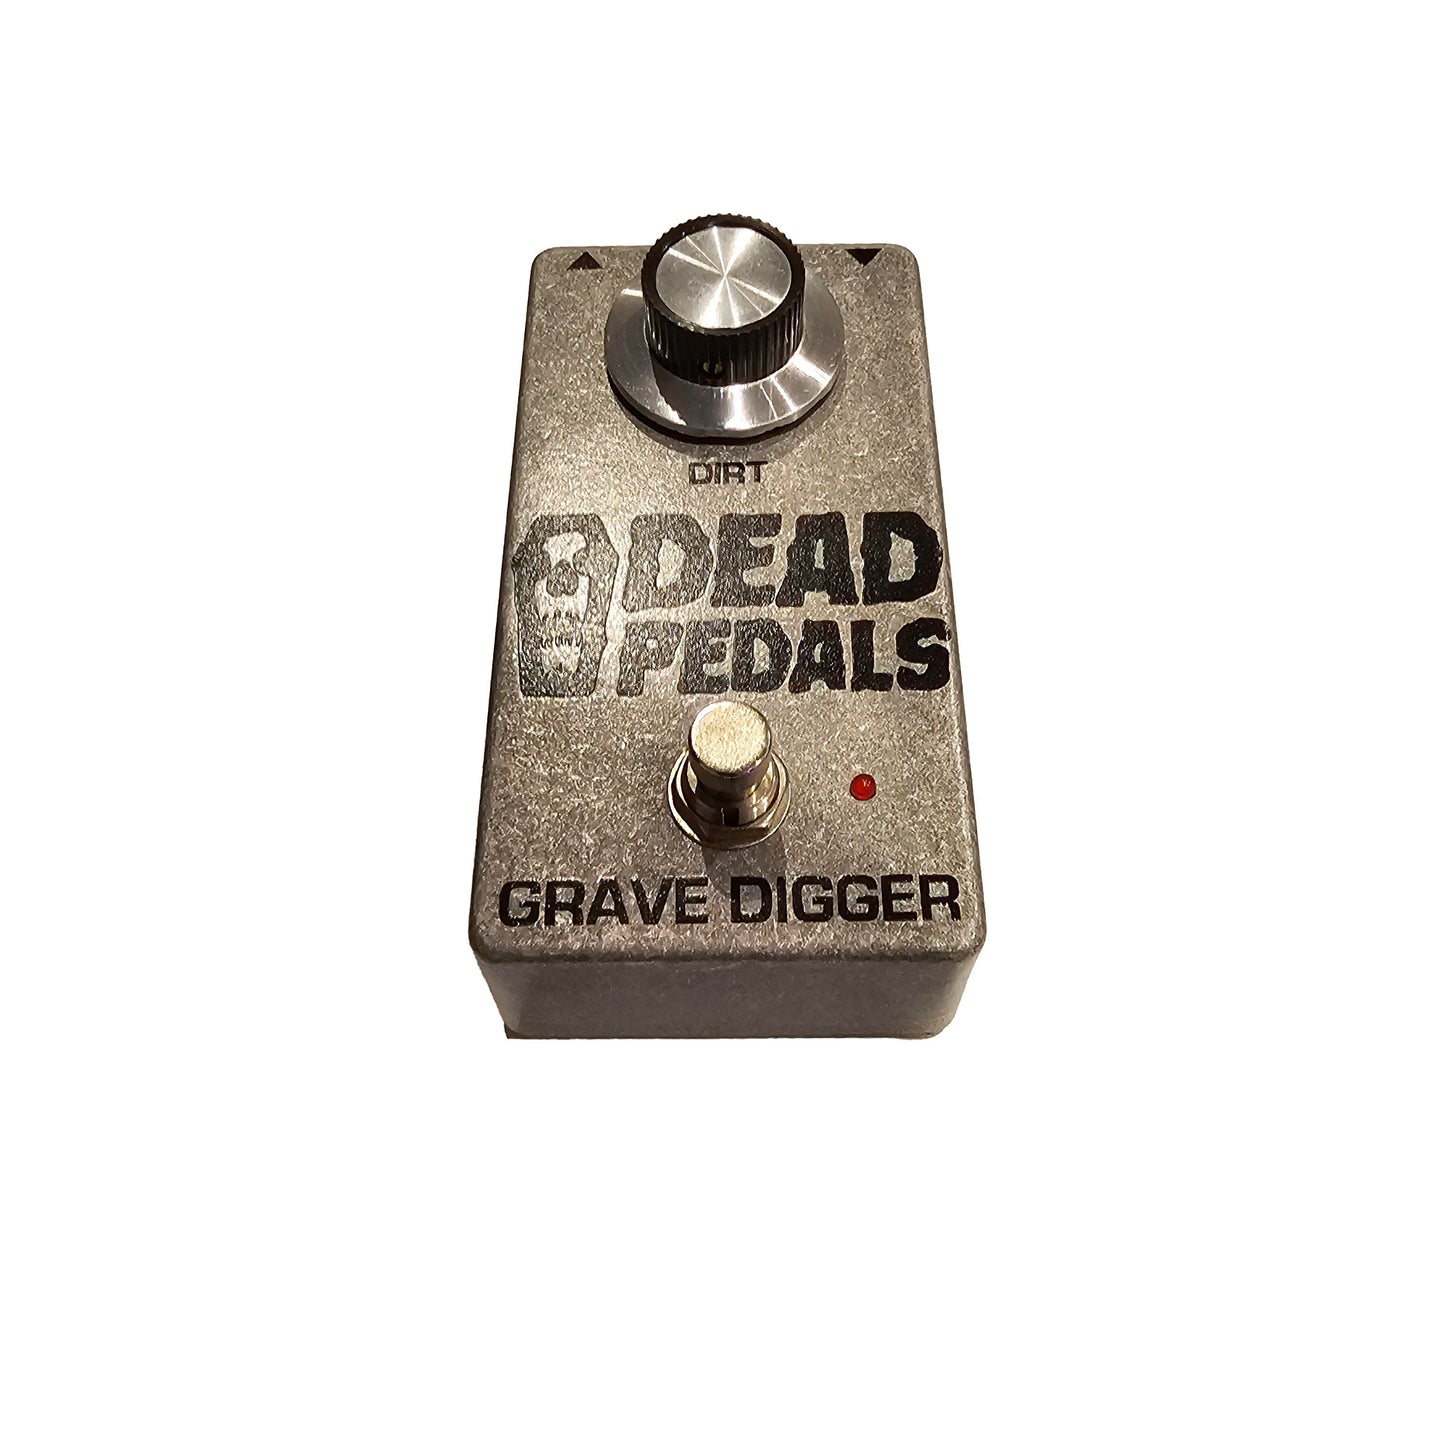 Dead Pedals Grave Digger #1